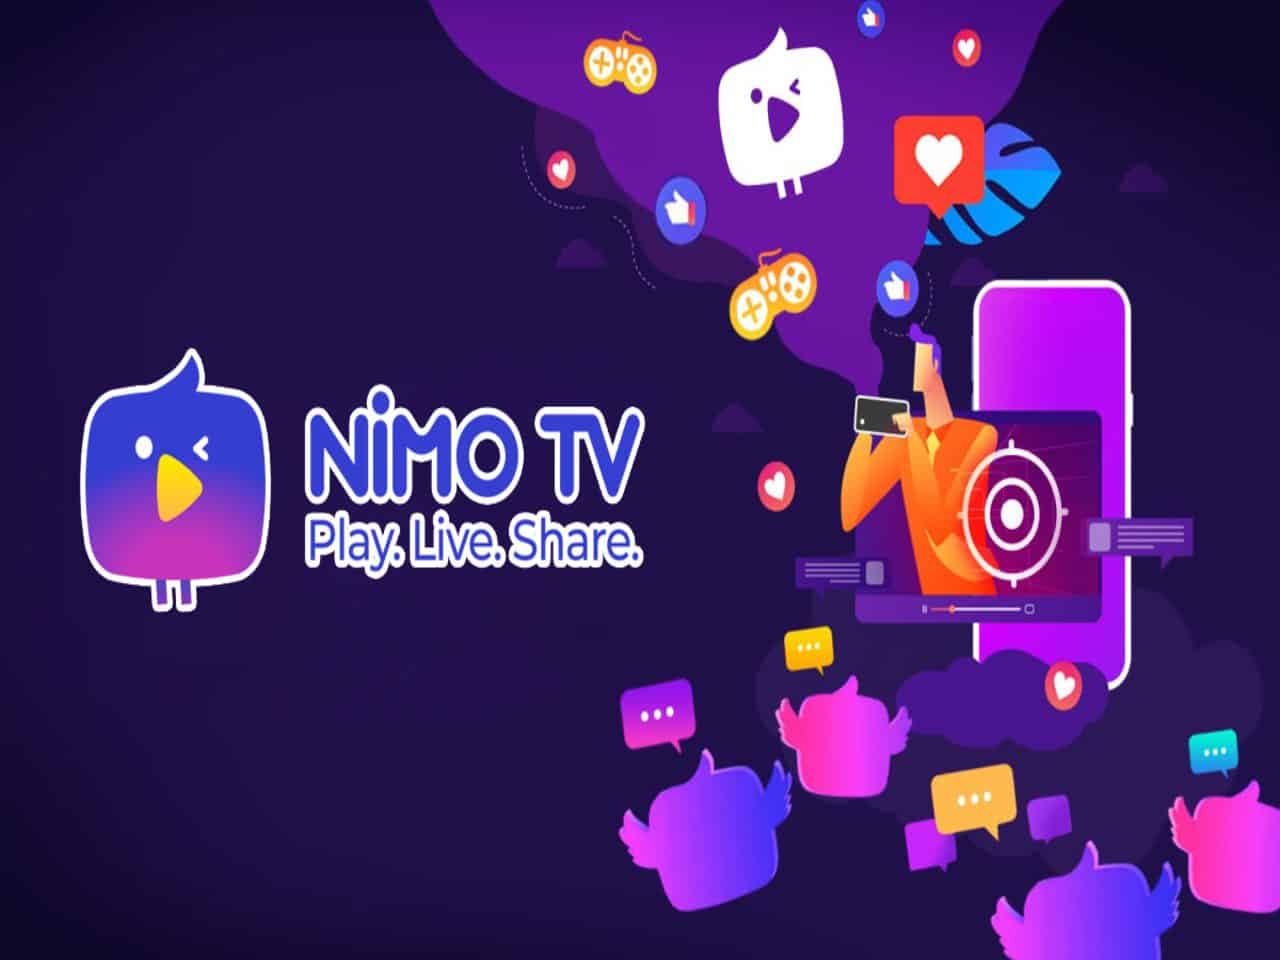 Nimo TV: o guia completo sobre a plataforma de streaming! - Olhar